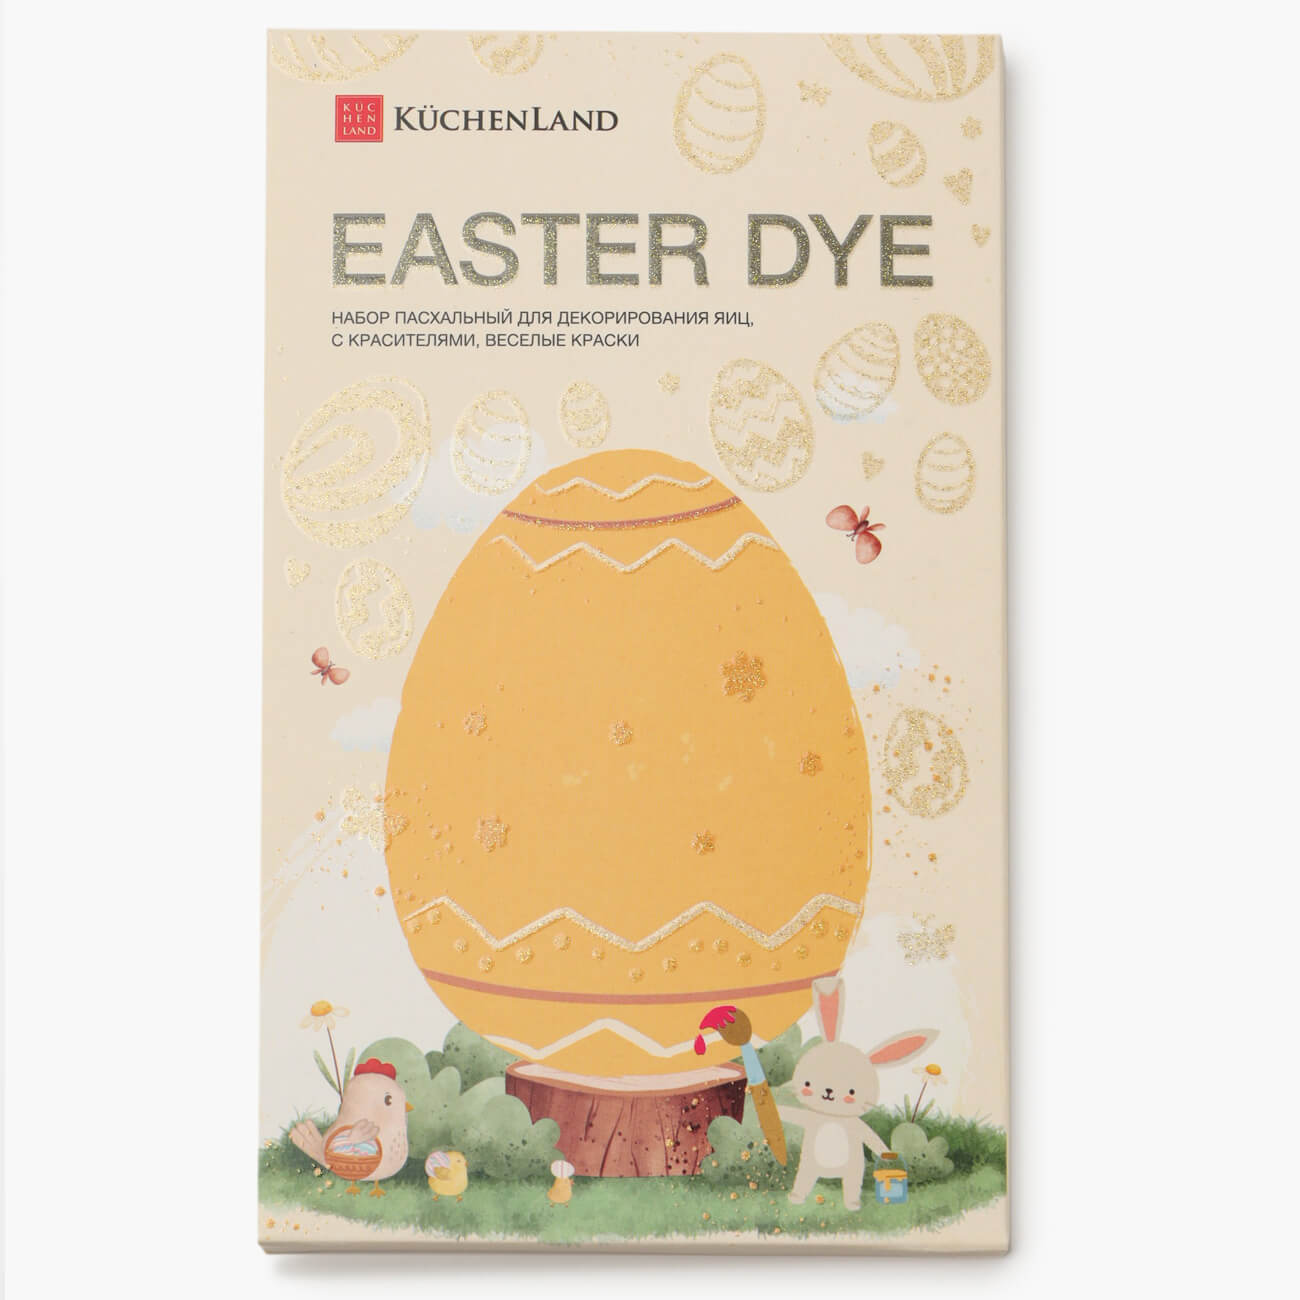 Набор пасхальный для декорирования яиц, 7 цветов/13 пр, Веселые краски, Easter dye набор бумаги металлизированной а4 5 листов 5 цветов 235 г м2